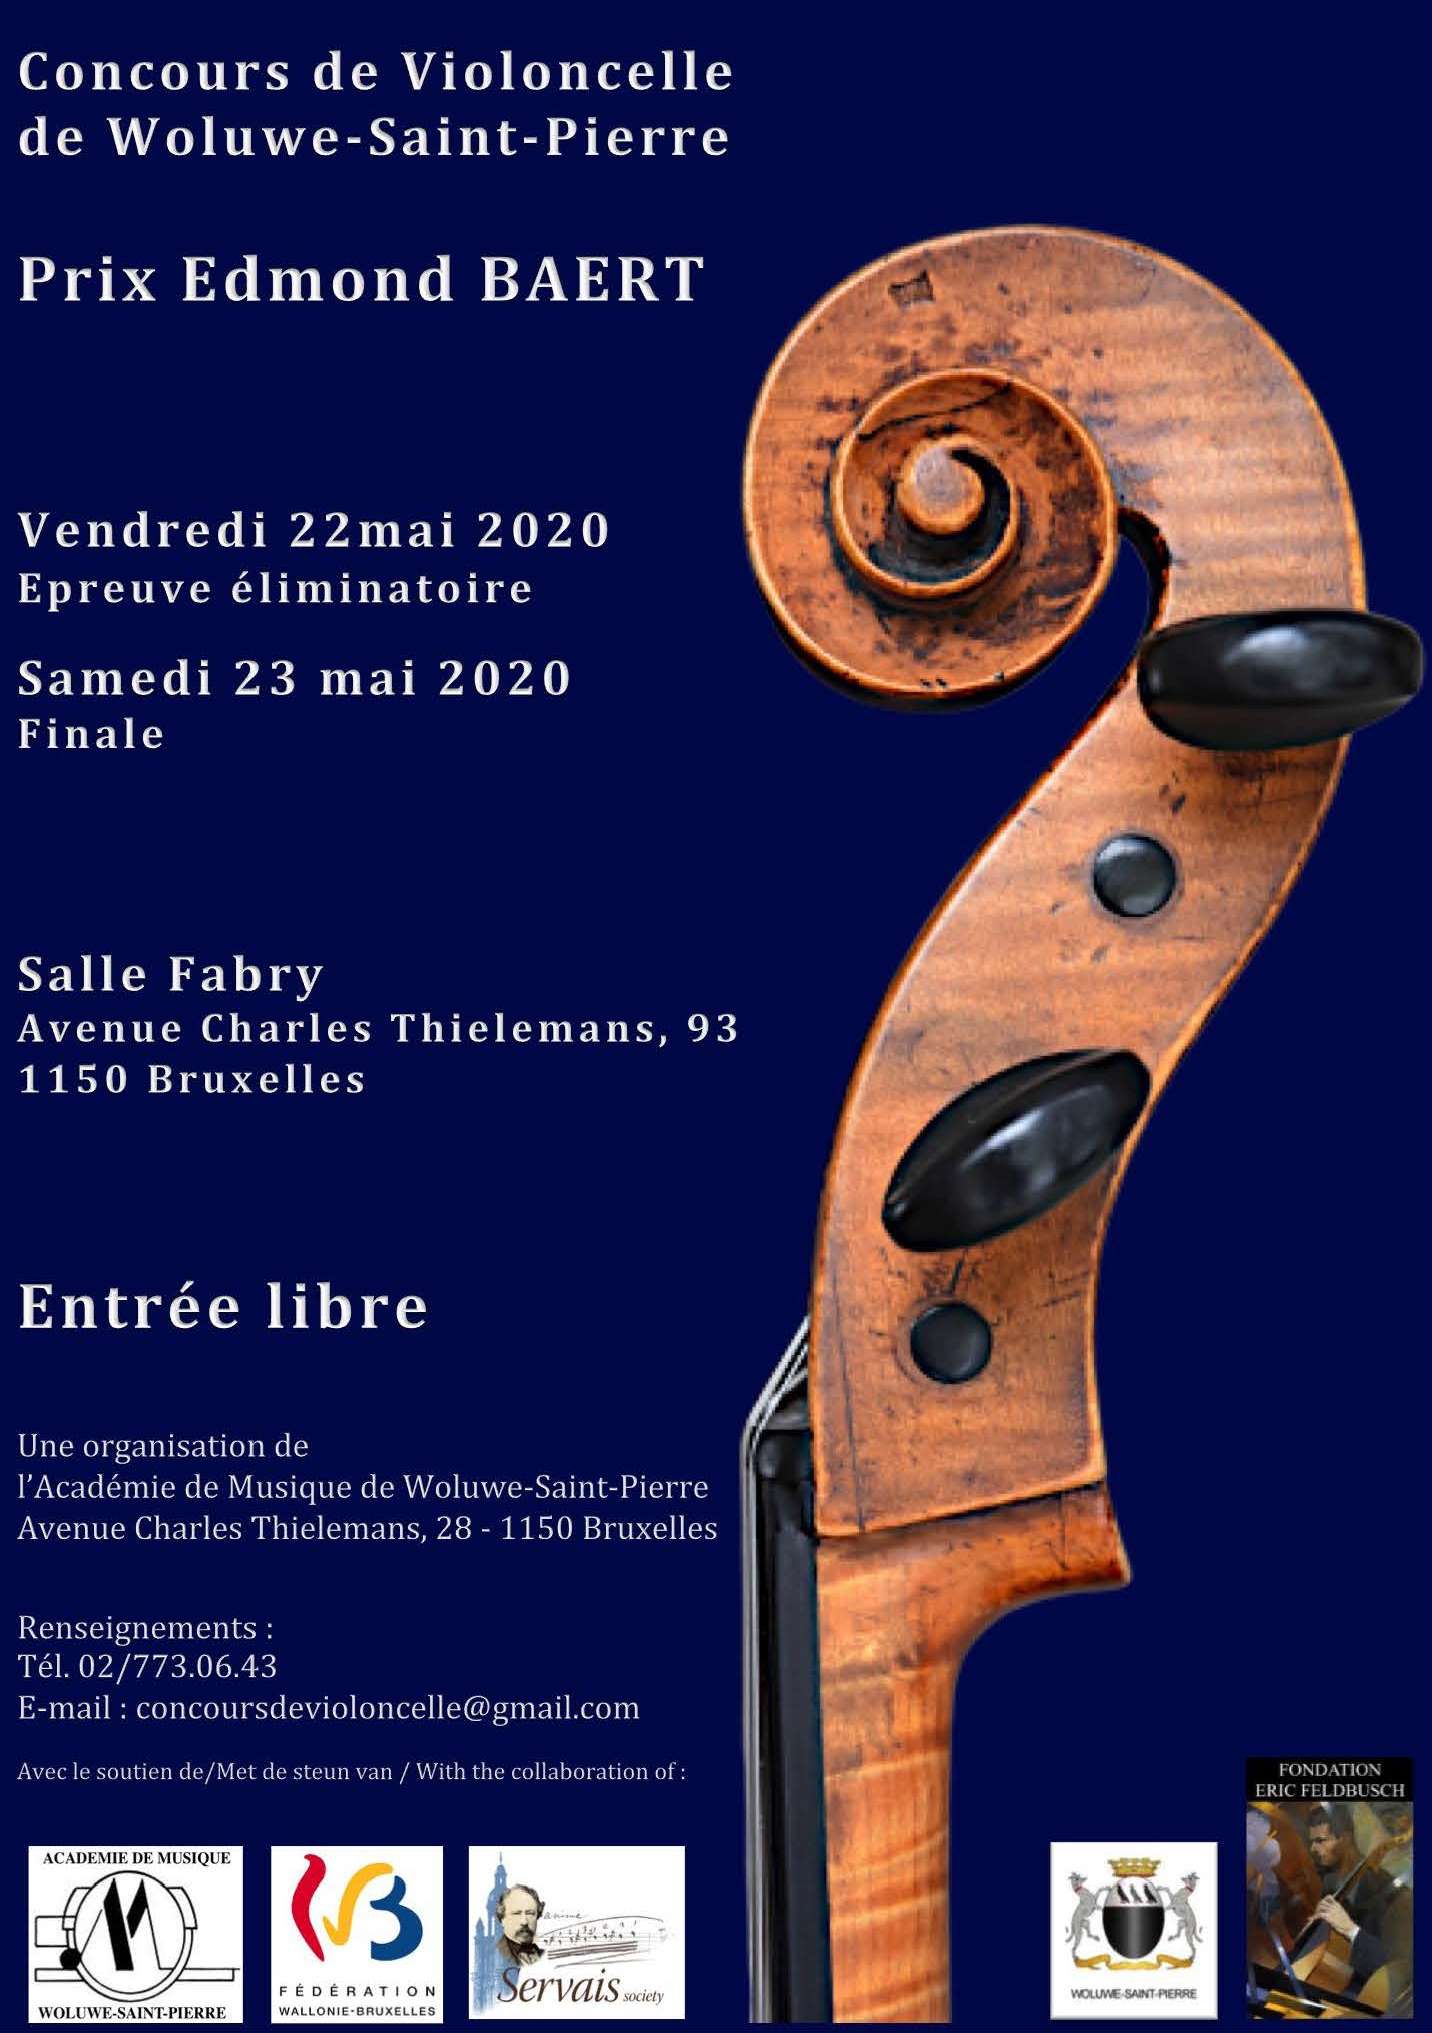 Concours de Violoncelle Edmond Baert - annulé